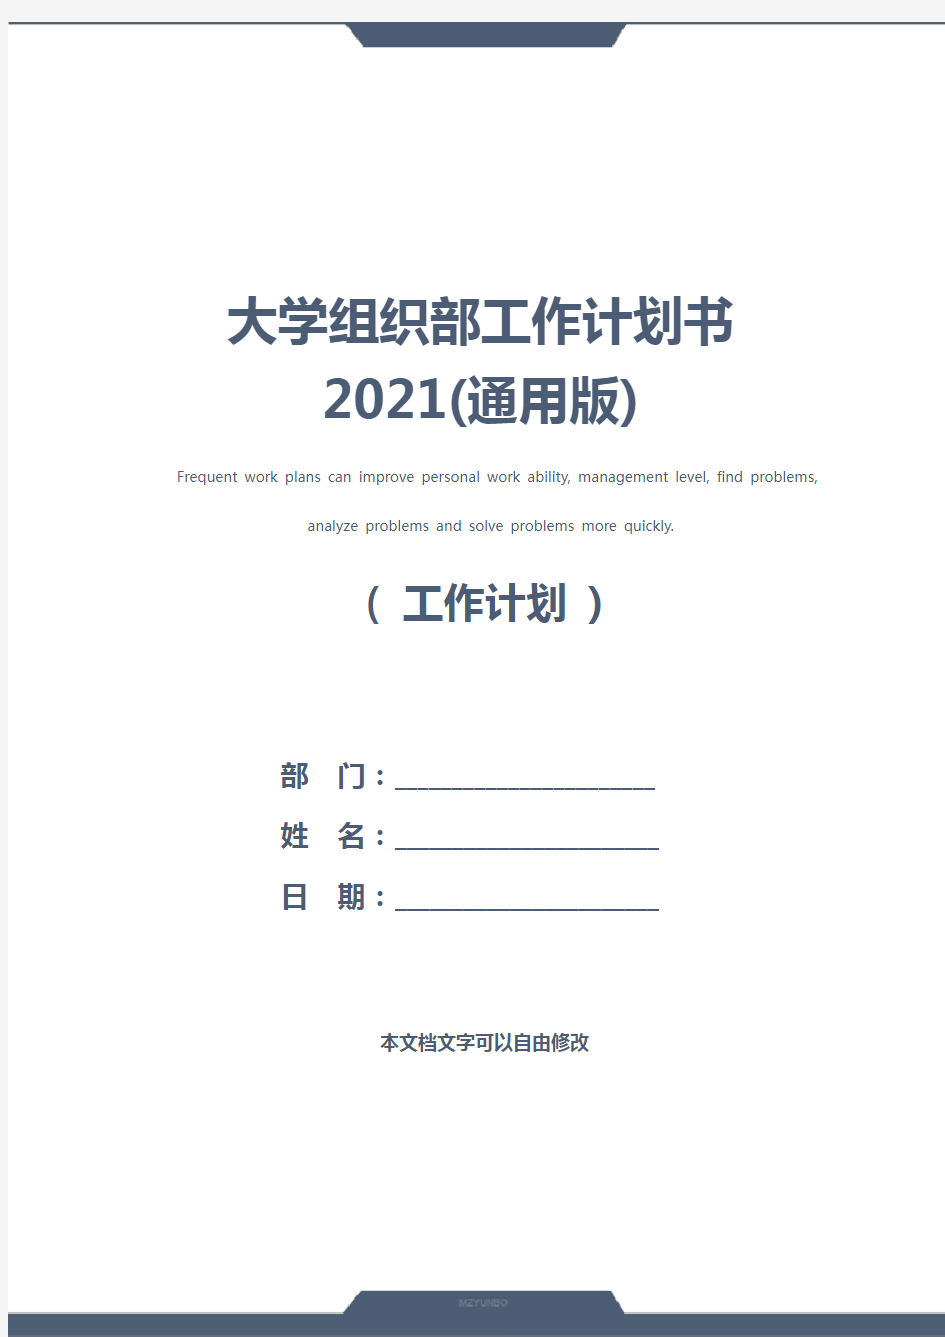 大学组织部工作计划书2021(通用版)